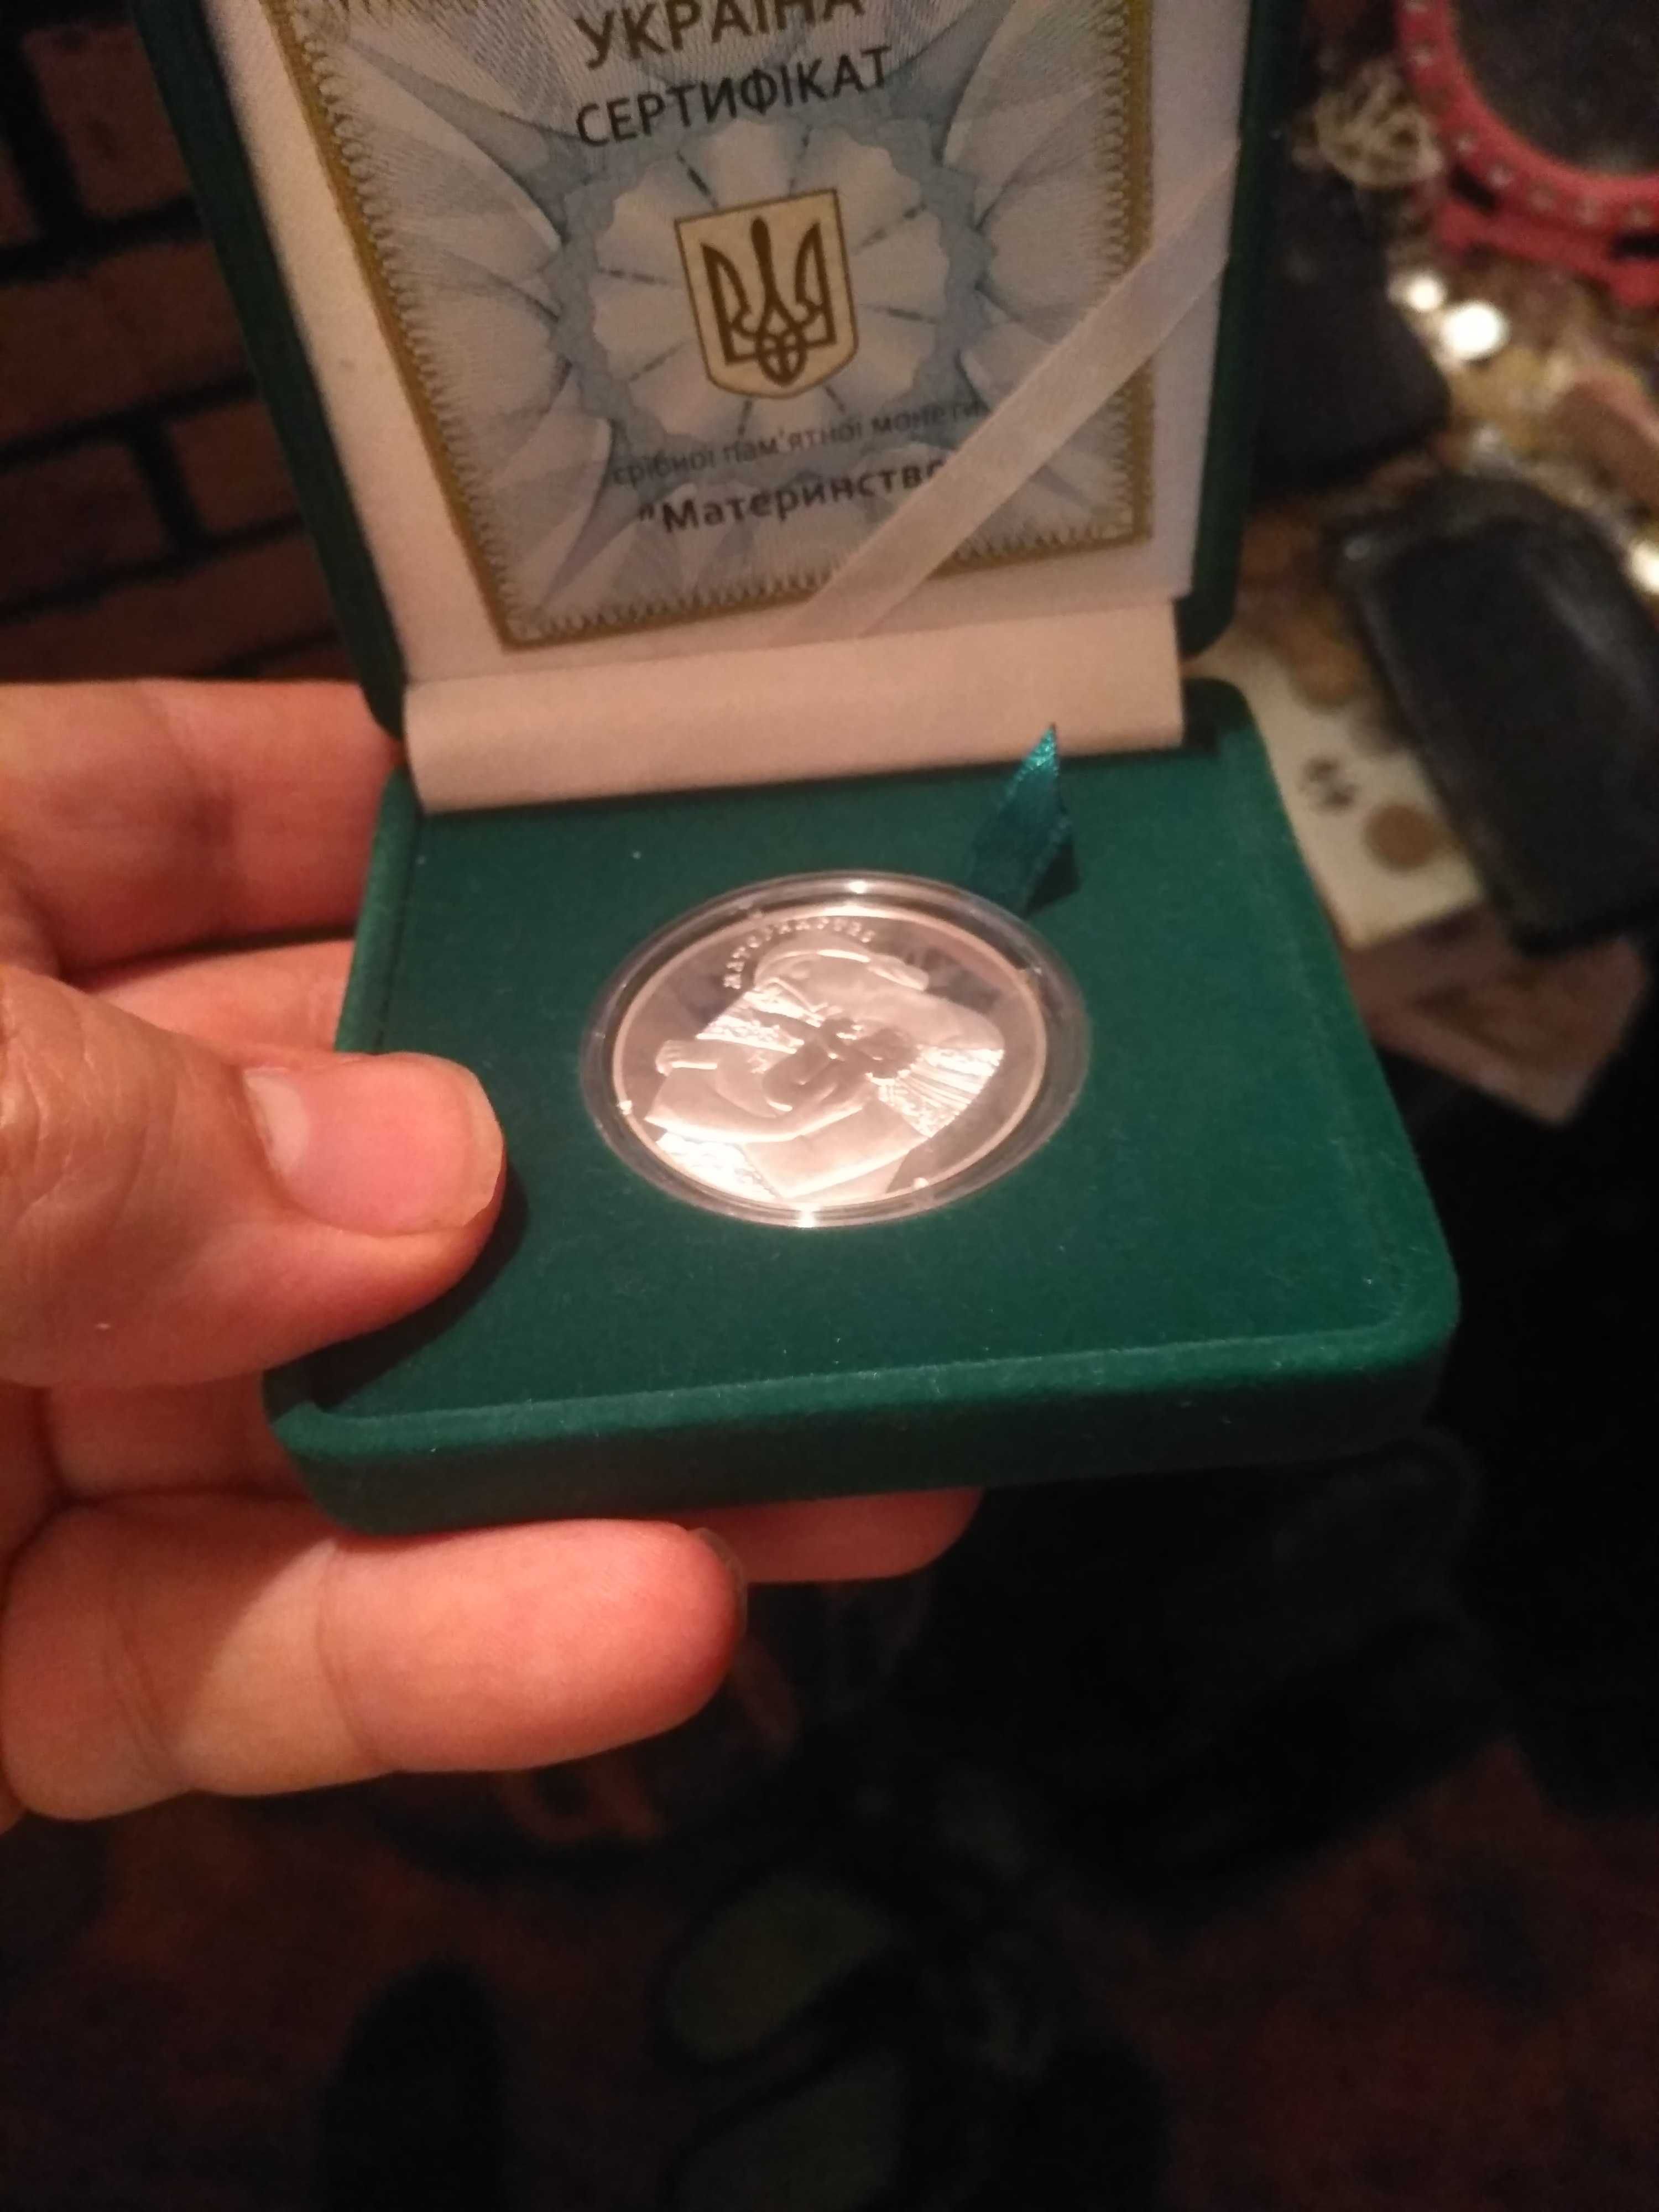 Серебренная монета Материнство 925.  На подарок.